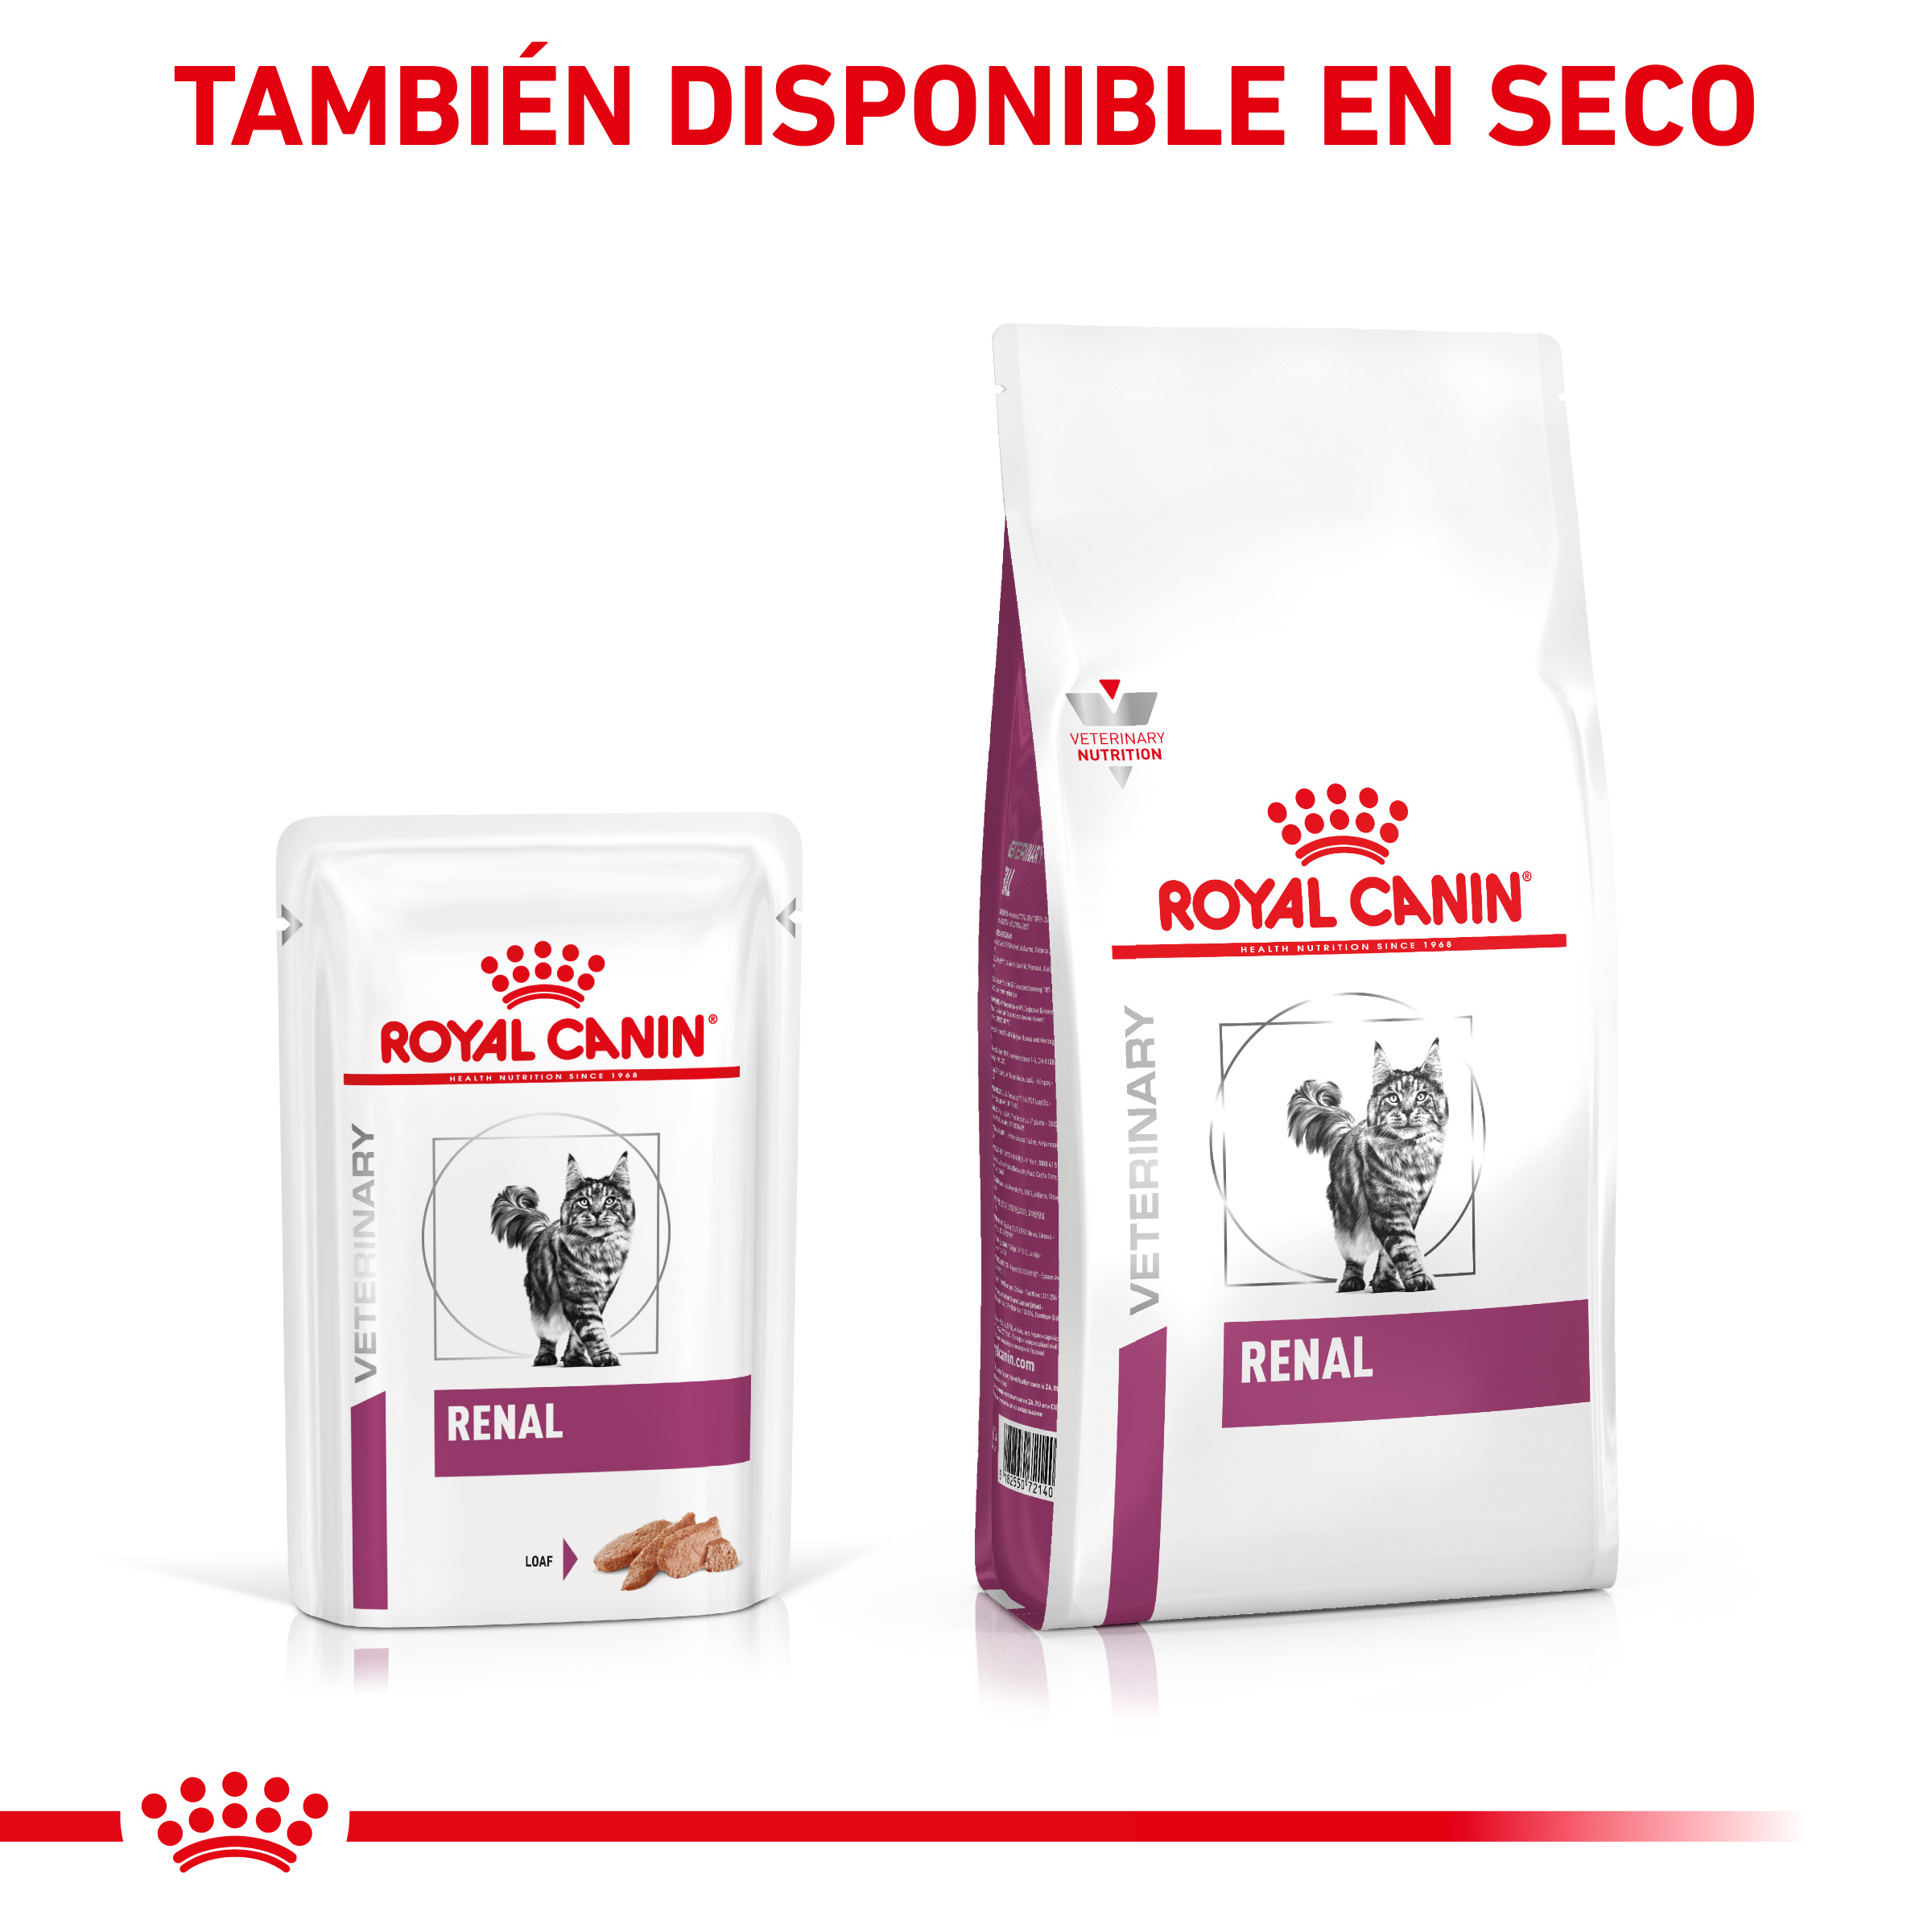 Royal Canin Comida Húmeda Paté Renal para Gatos - Miscota España